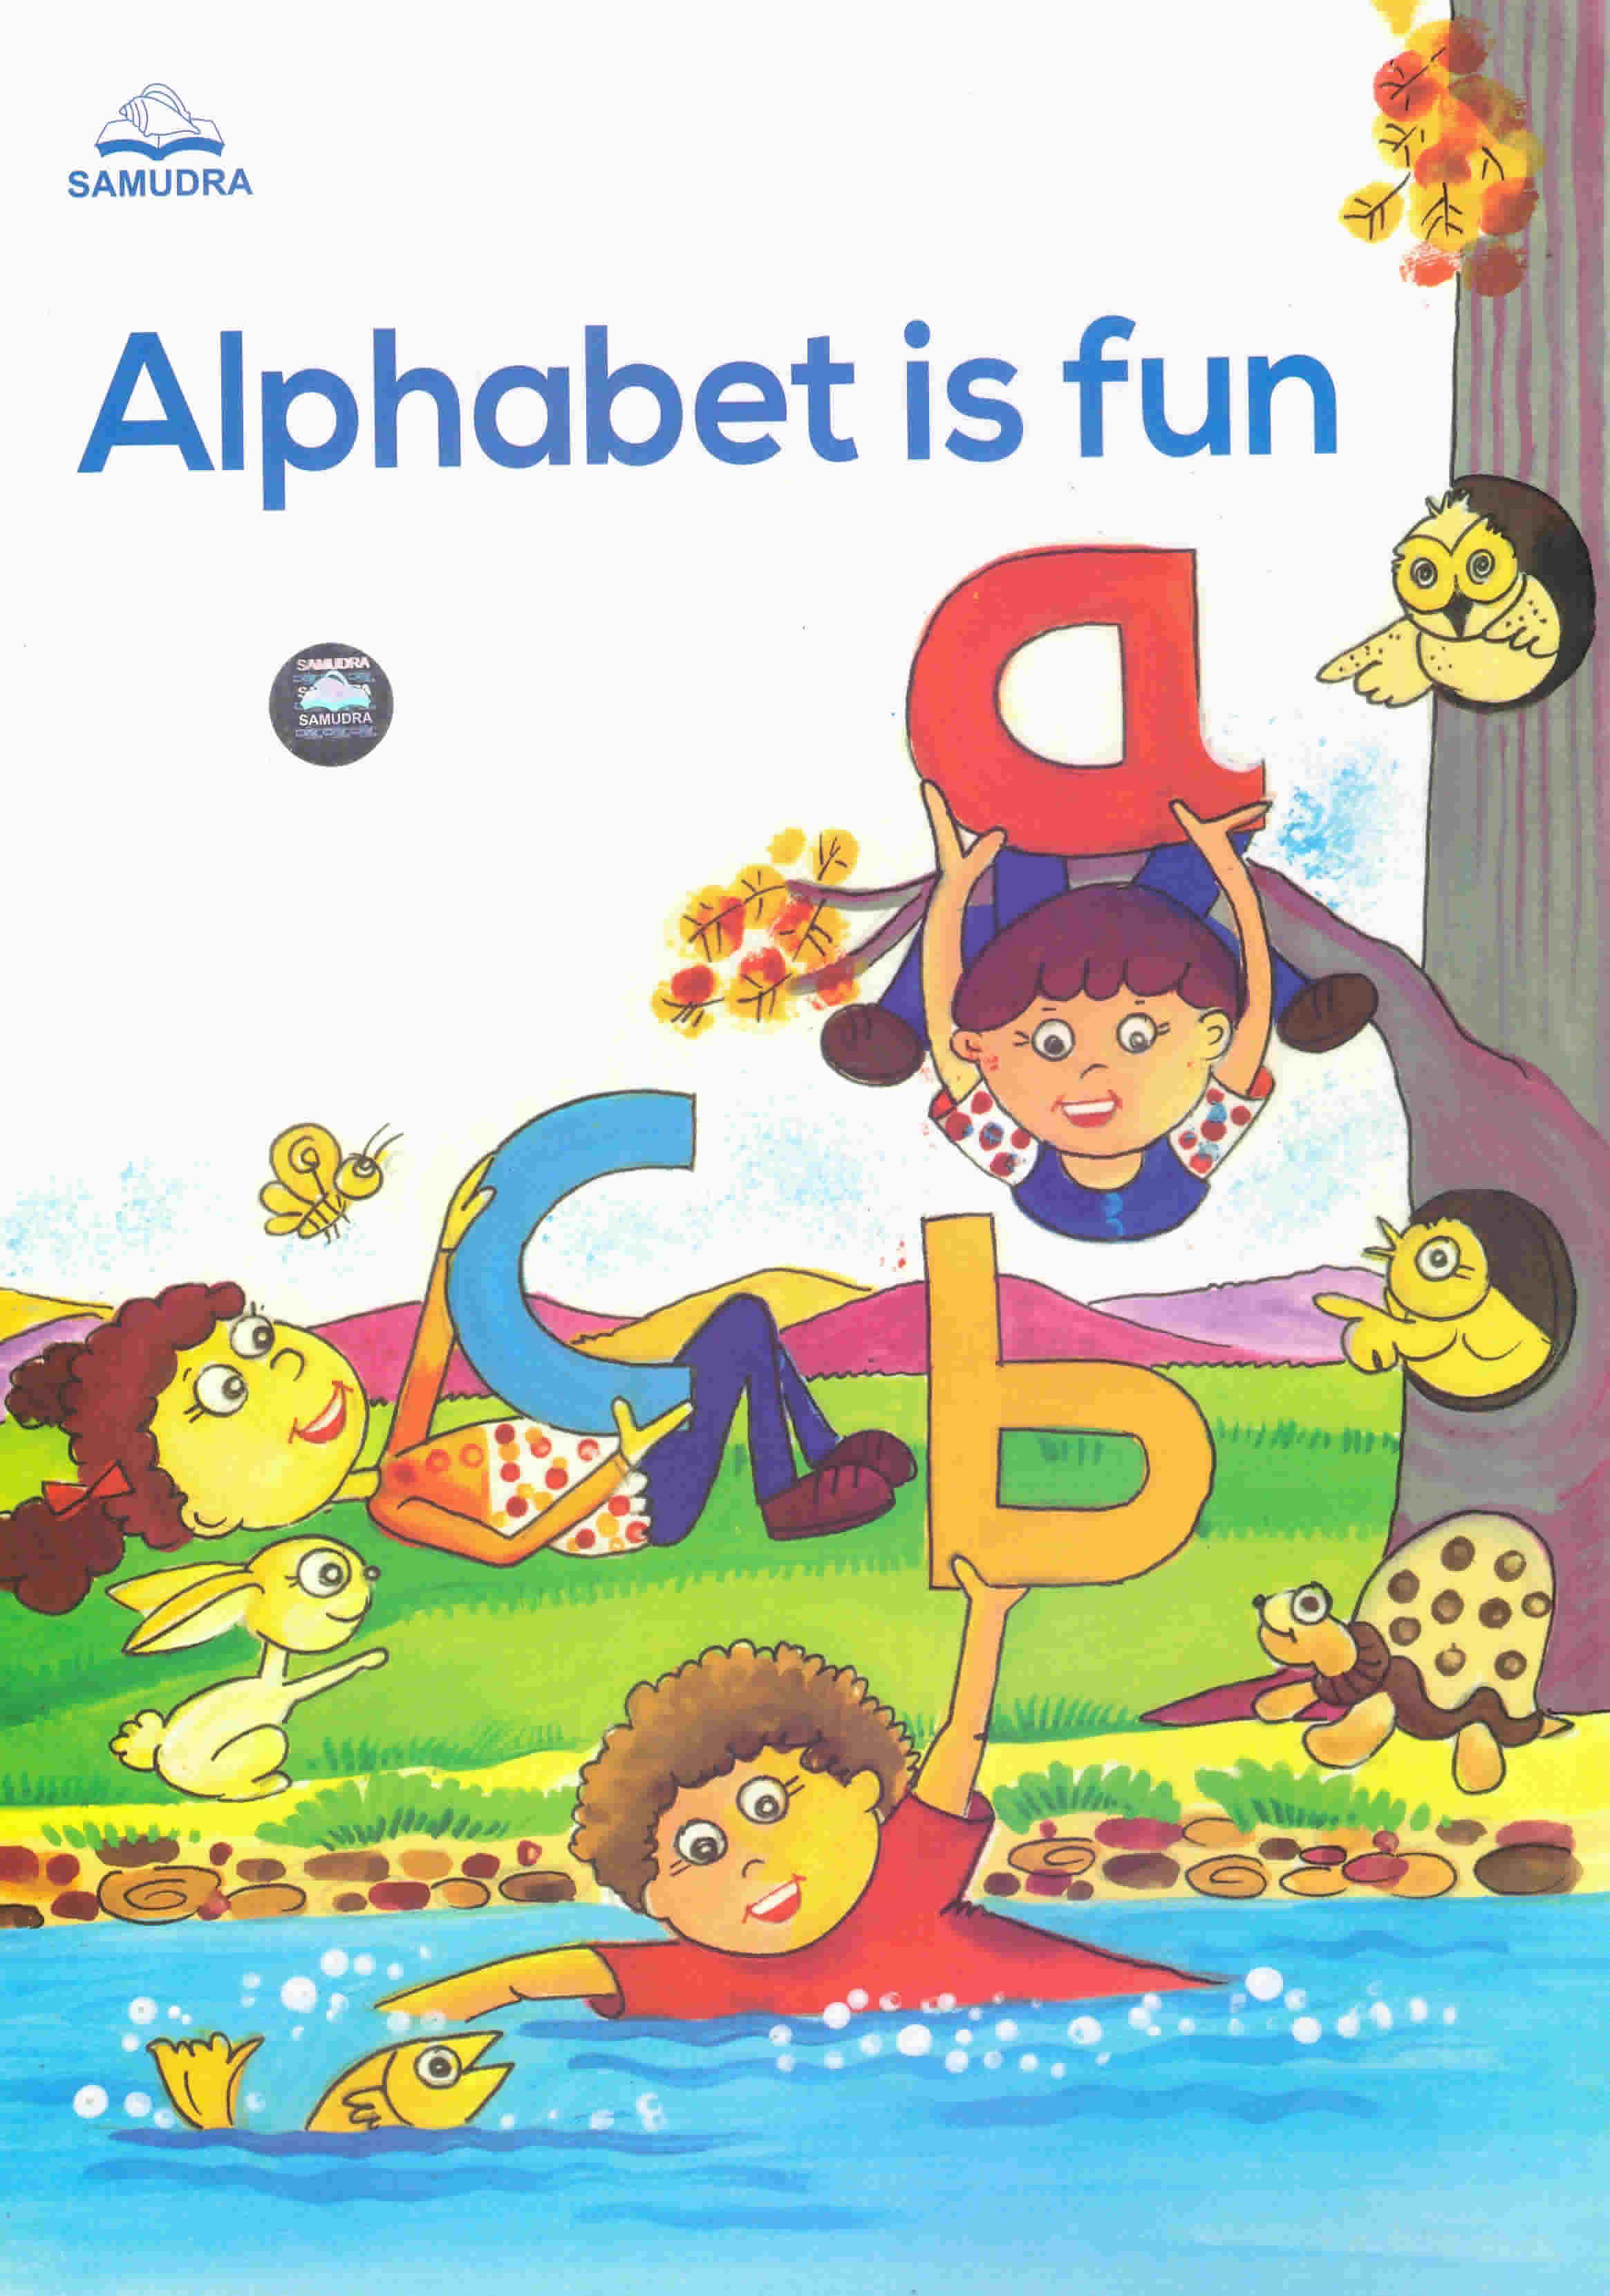 Alphabet is fun